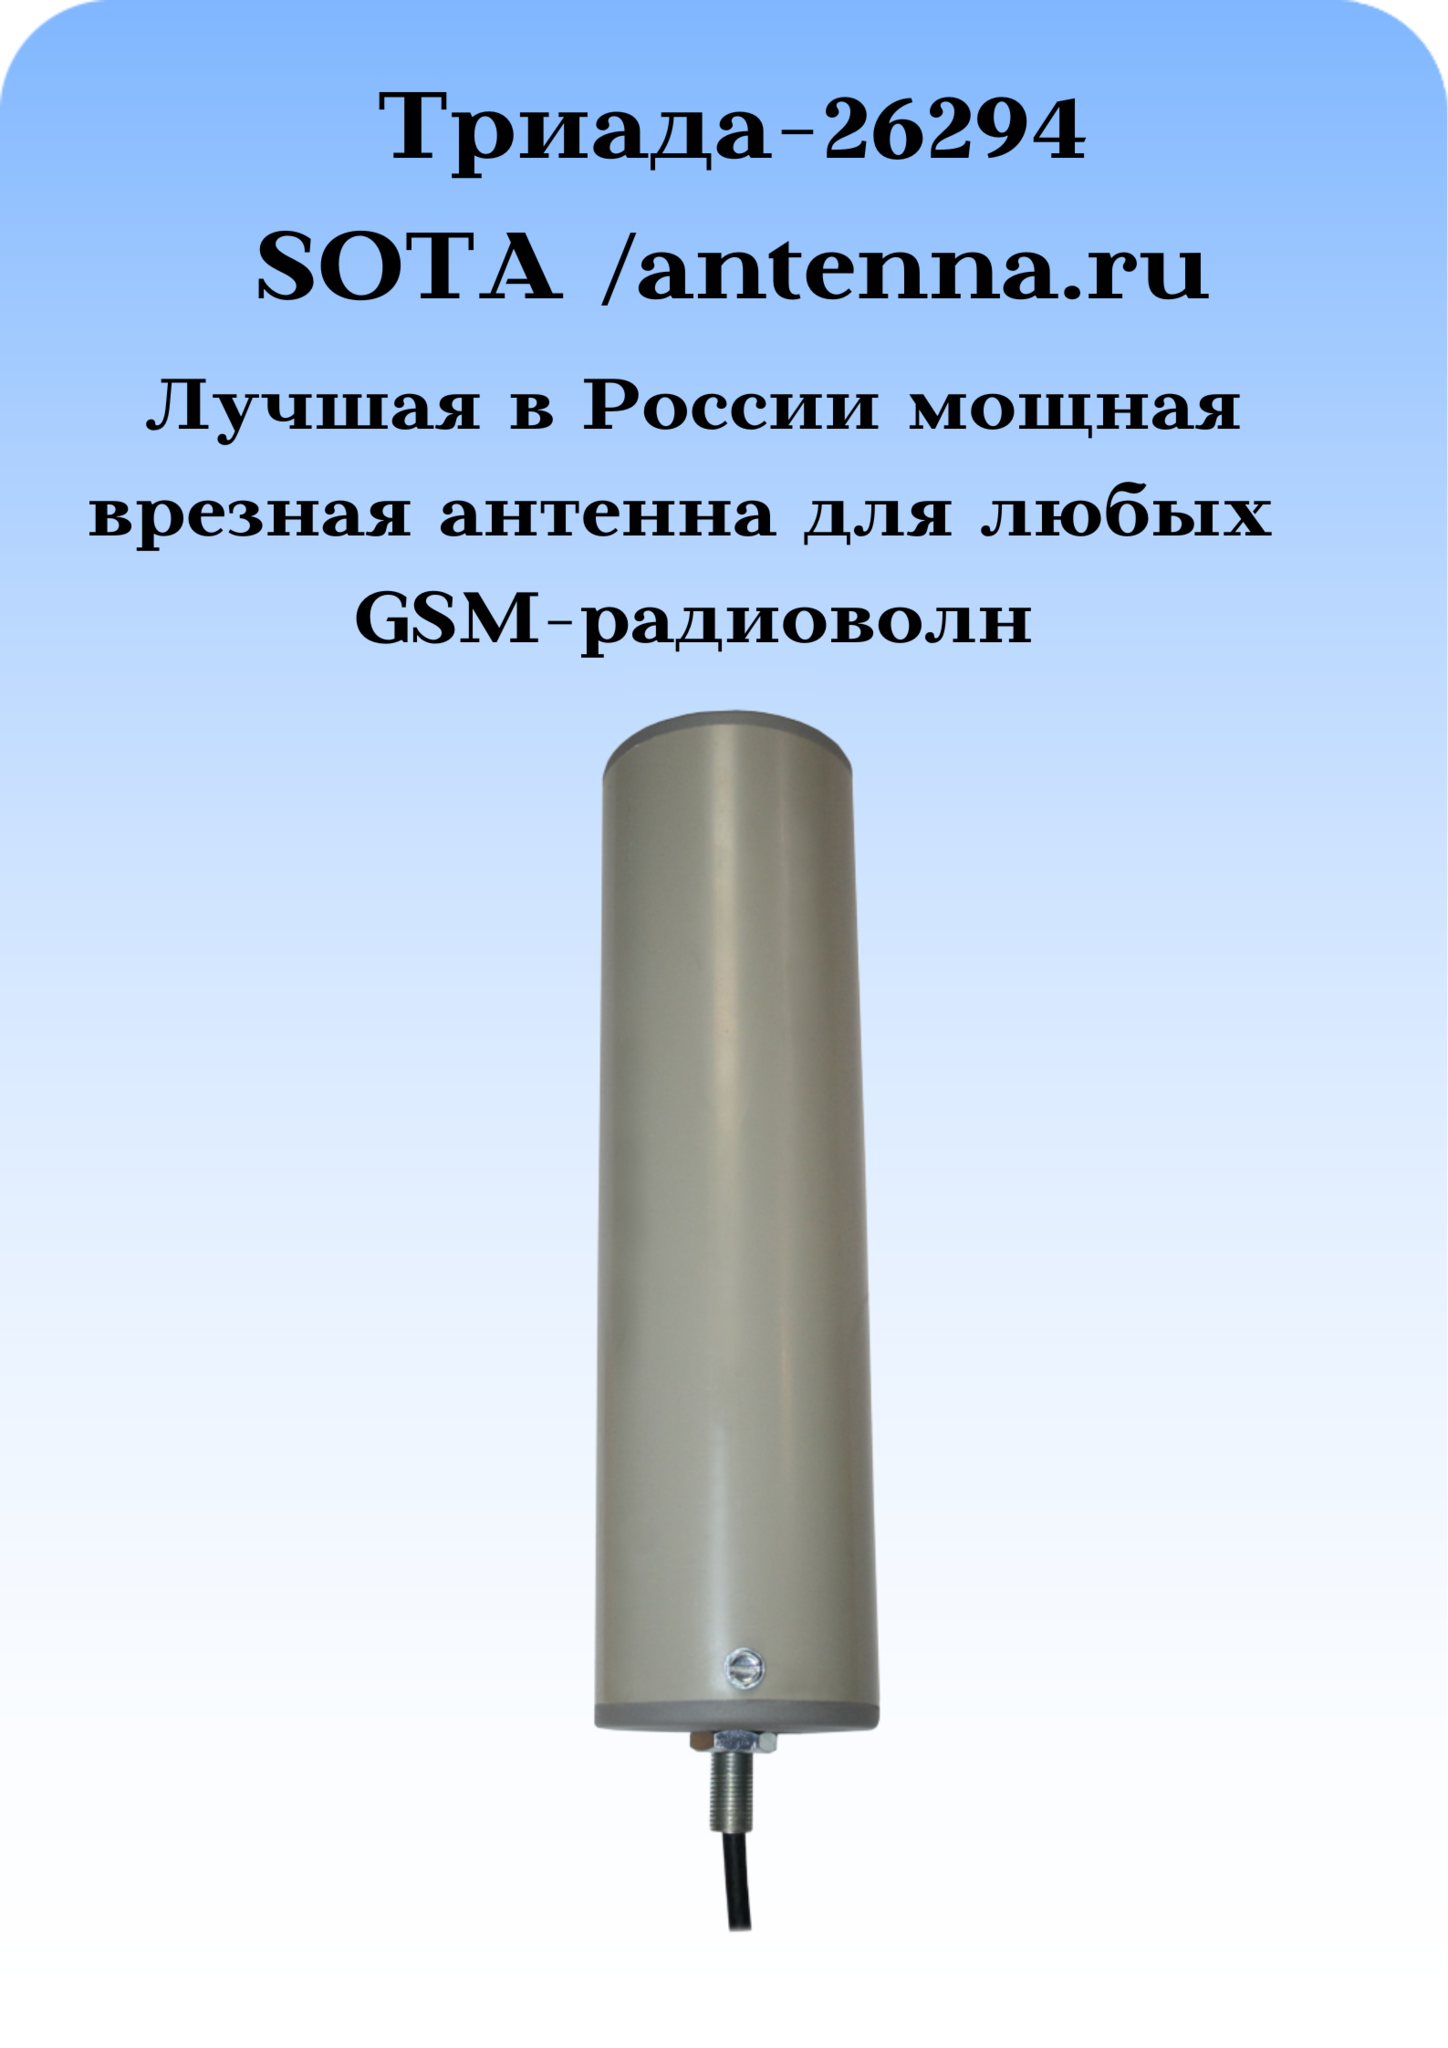 Триада-26294 SOTA/antenna.ru. Антенна 3G/4G/1800/900МГц с очень большим усилением всенаправленная врезная